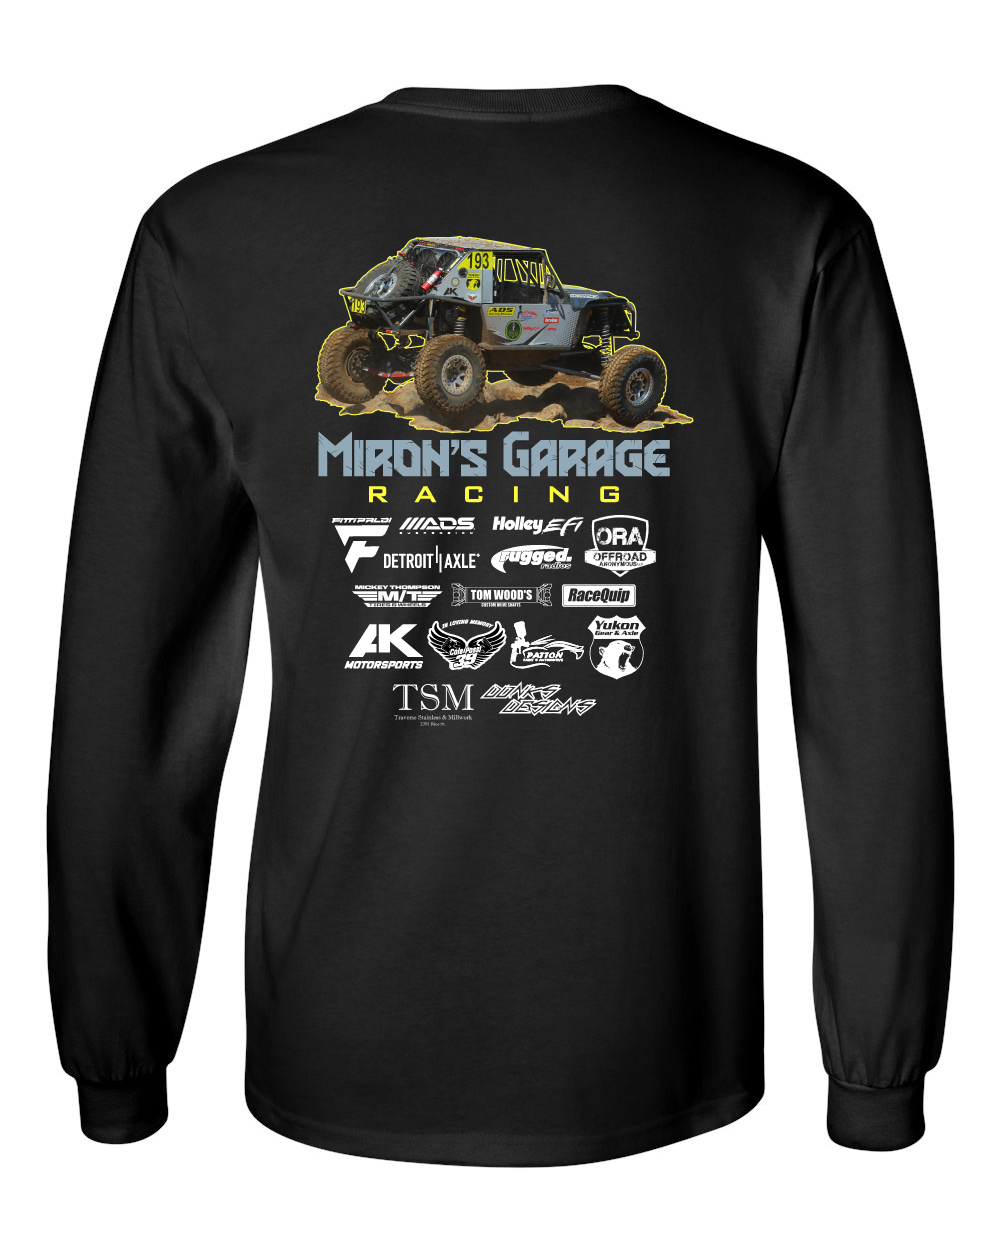 Miron's Garage Racing #193